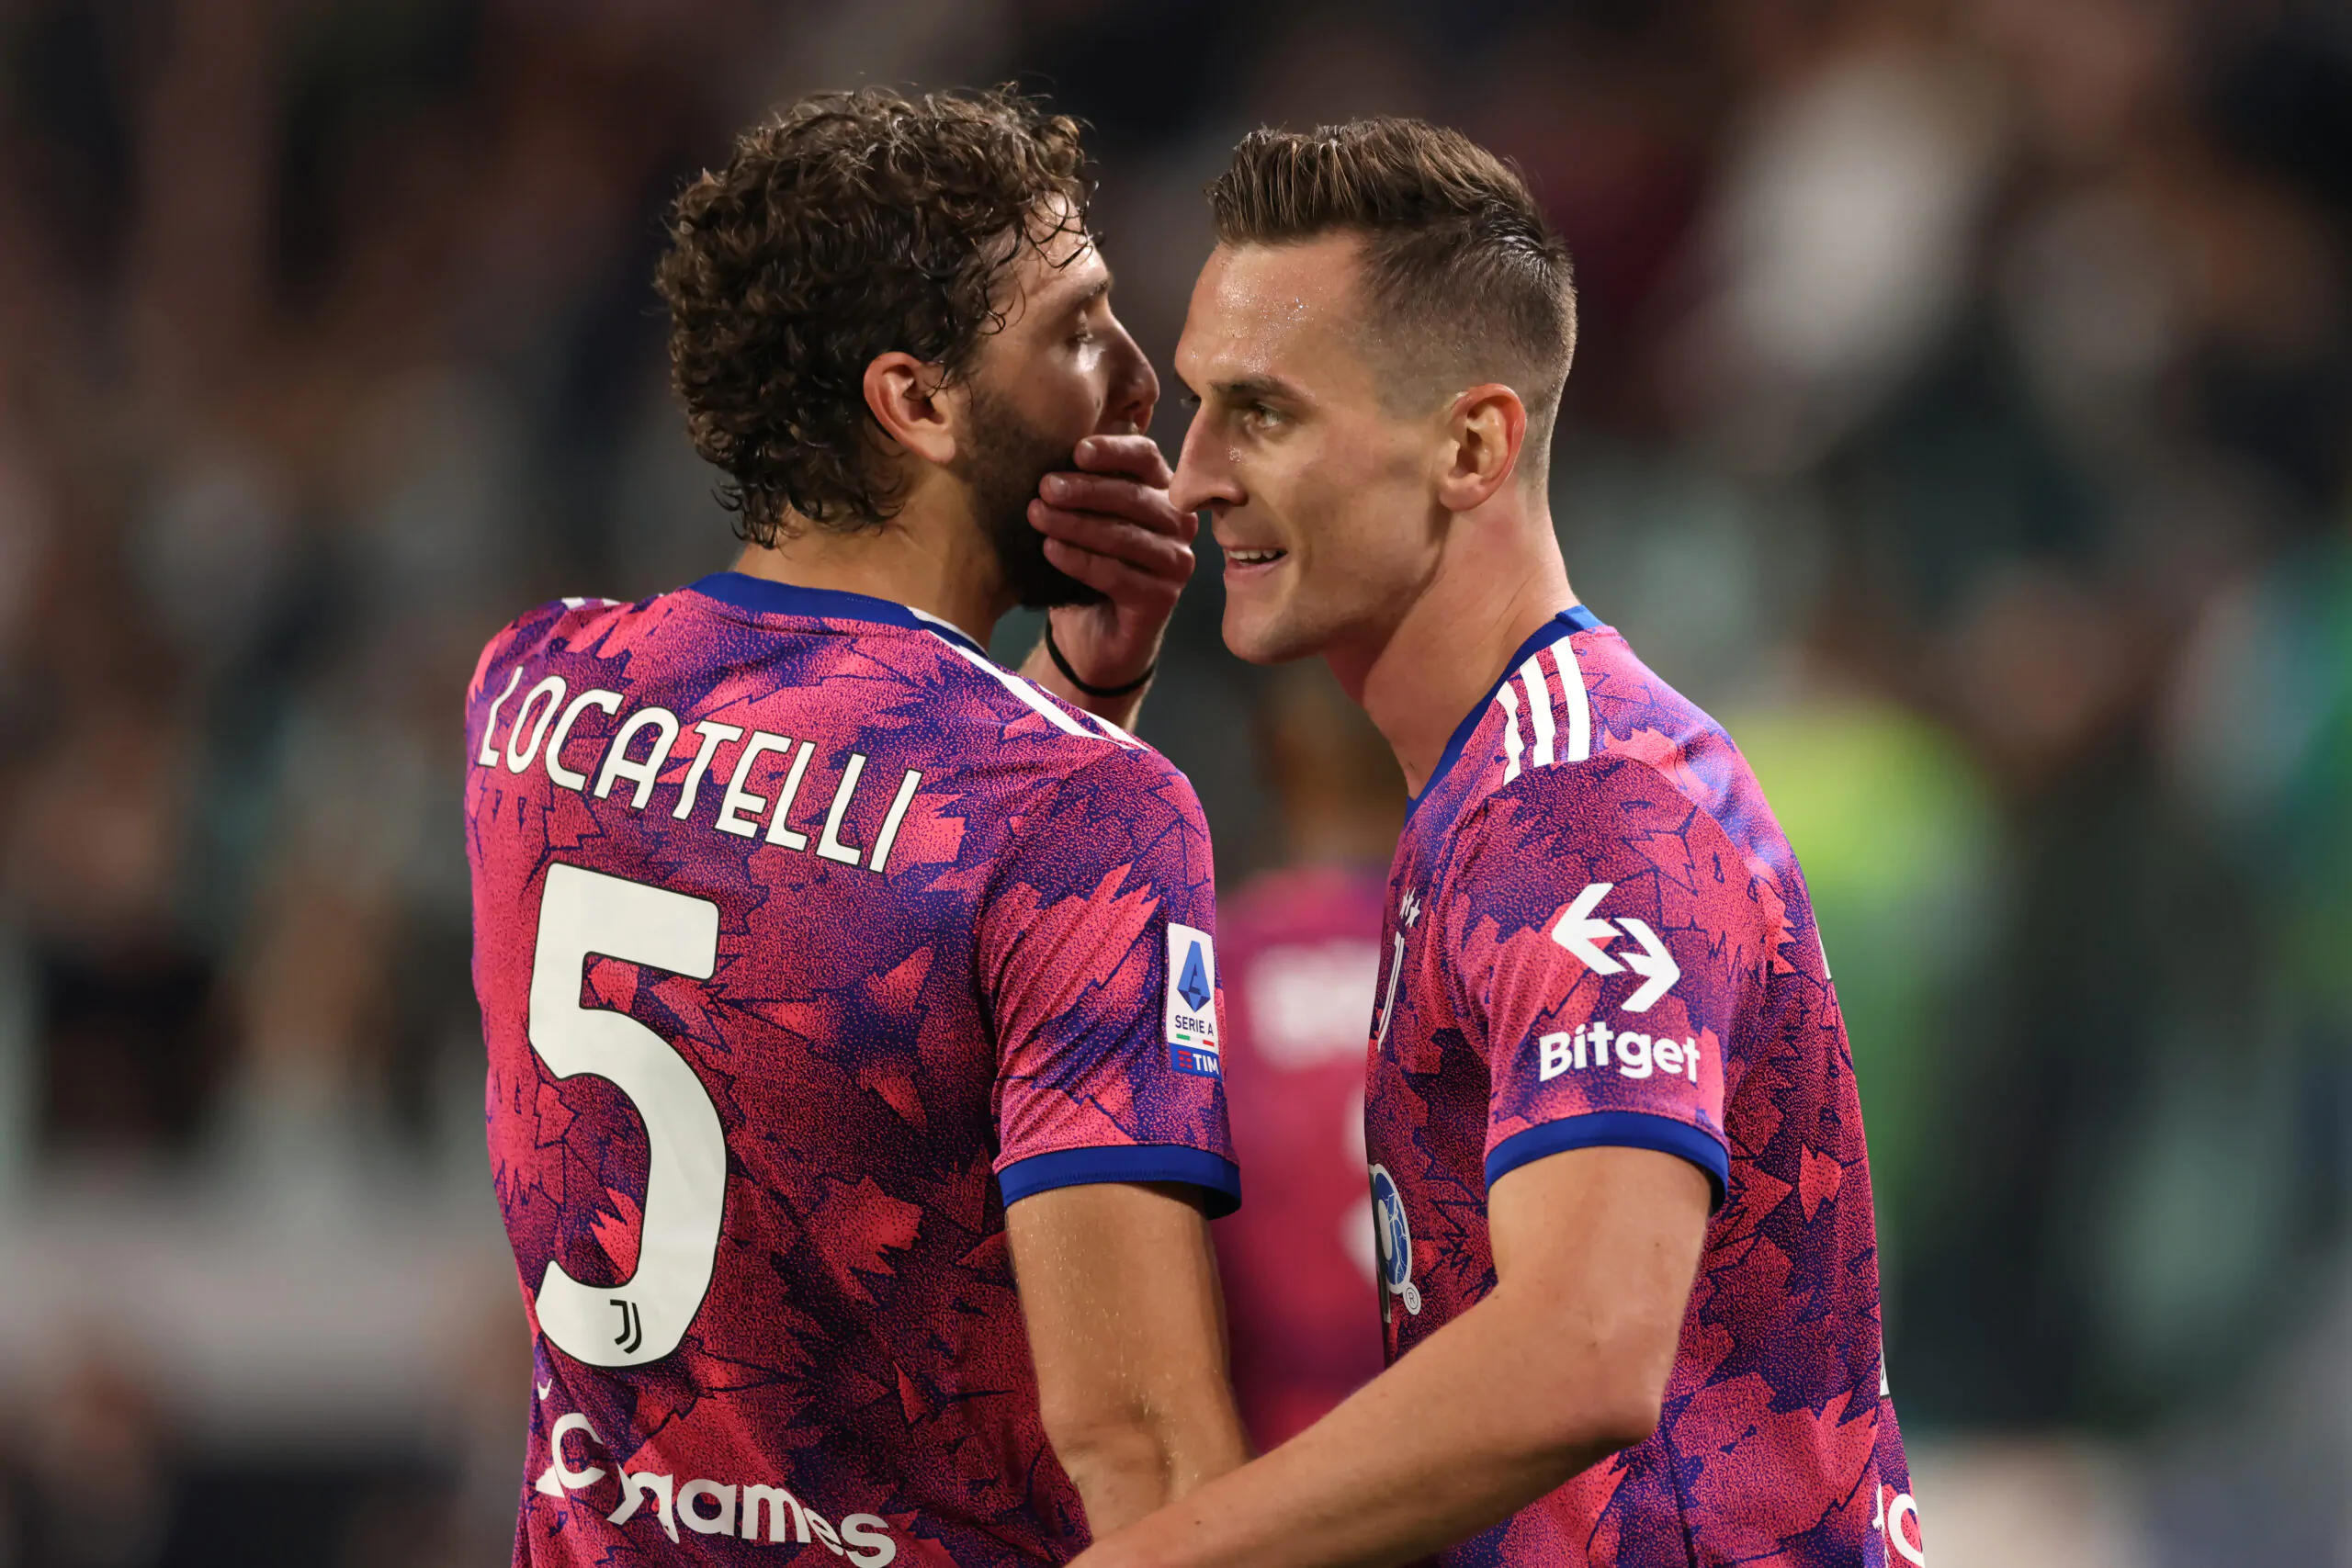 UFFICIALE – La Juventus riscatterà il giocatore